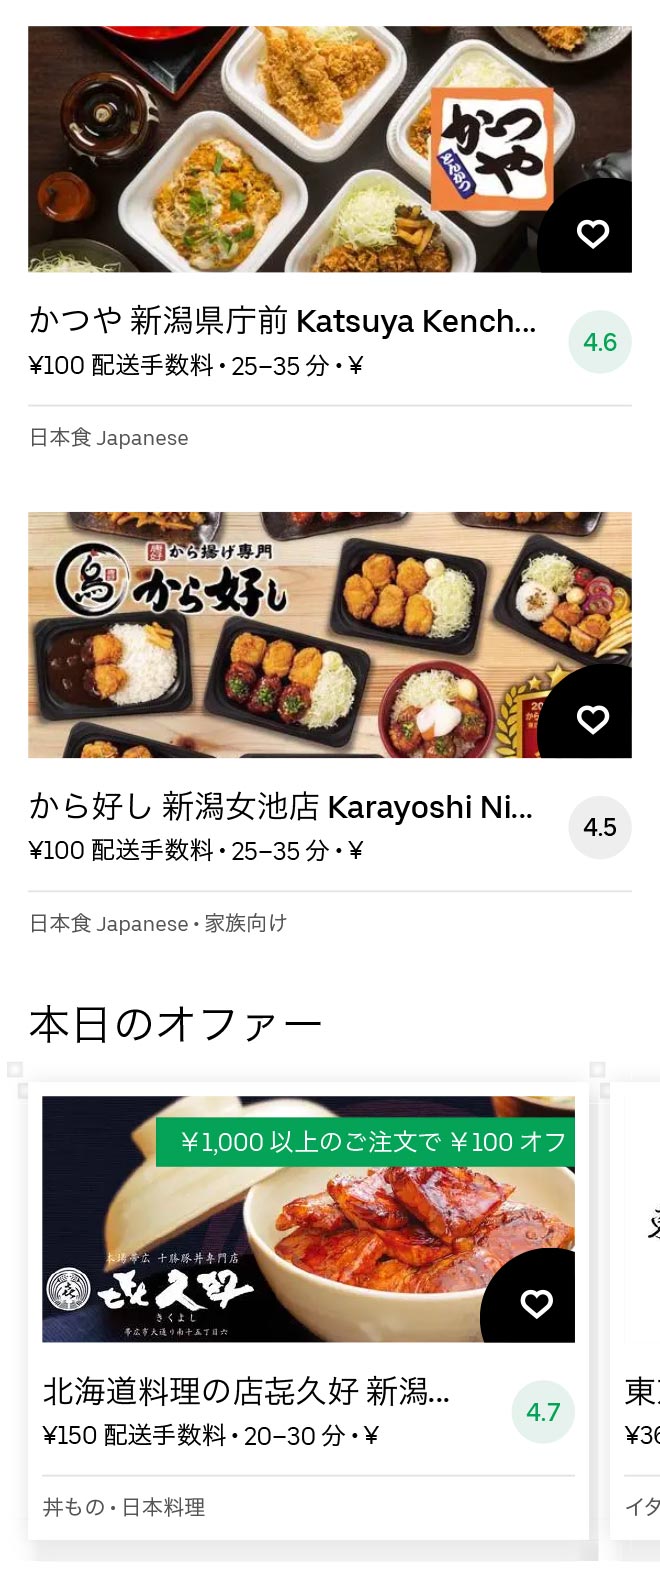 Kamiyama menu 2011 03